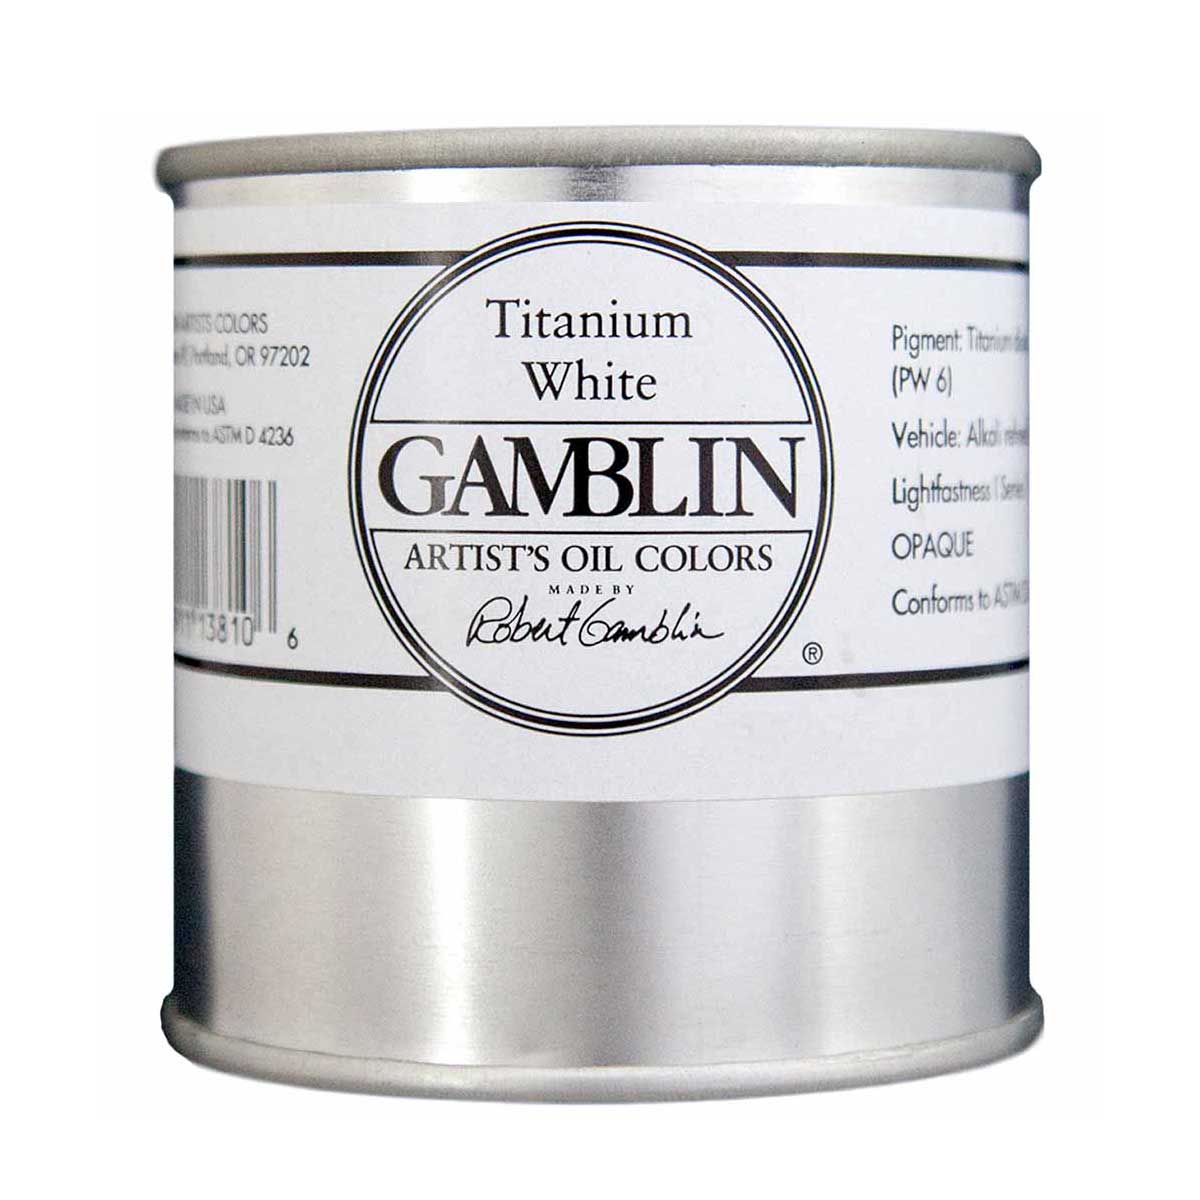 Gamblin Artitst's Oil Color - Titanium White, 500 ml (16oz)